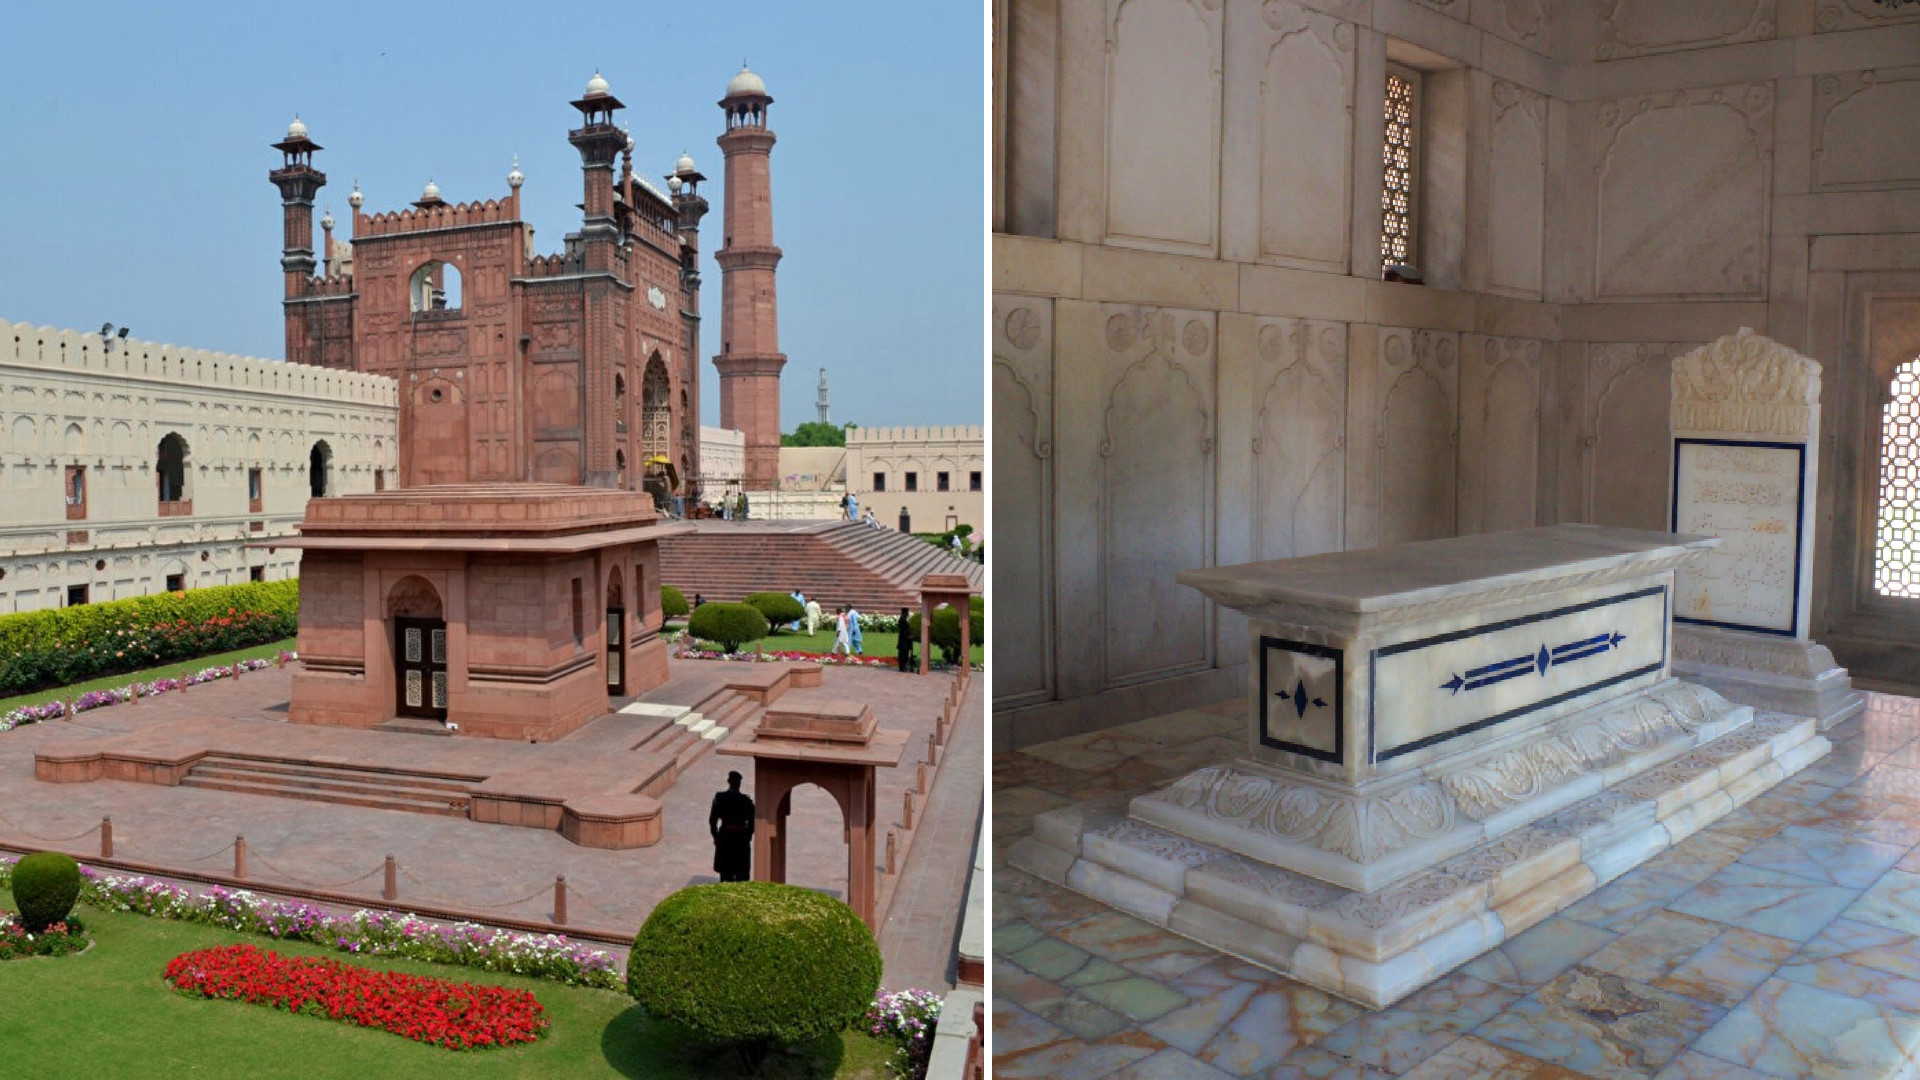 Pakistan'ın millî şairi Muhammed İkbal'in kabri, Bâbürlü İmparatoru Evrenzgib'in Lahor'da inşa ettirdiği Badşâhî Camii'nin yanı başında yer almaktadır.